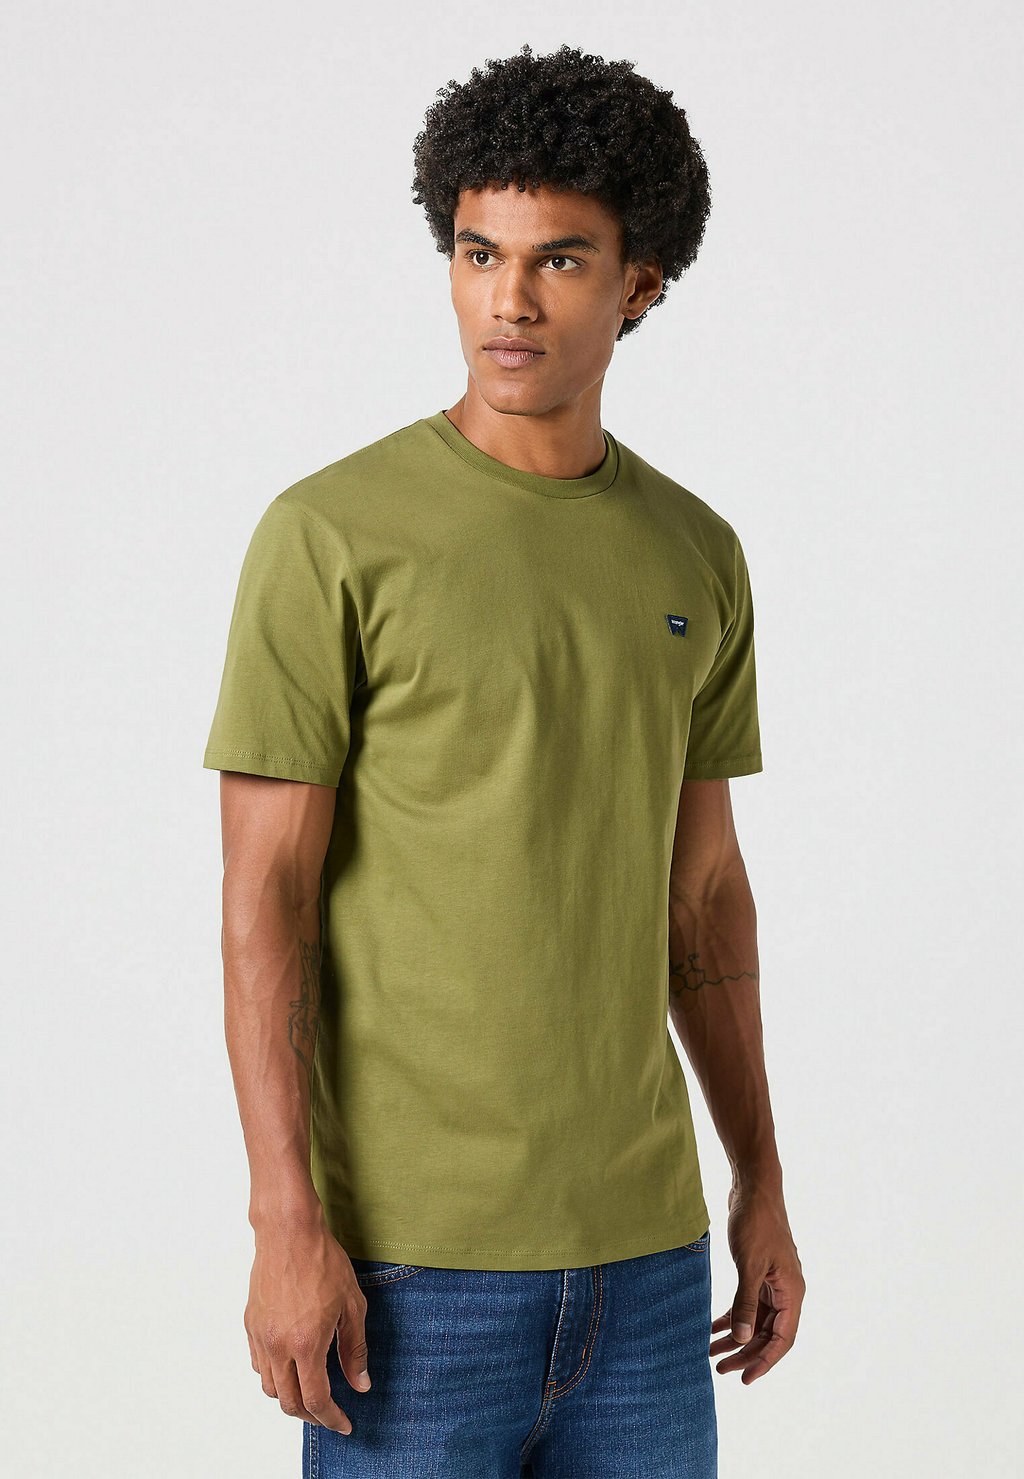 Базовая футболка SIGN OFF Wrangler, вереск зеленый брюки вереск размер 164 зеленый